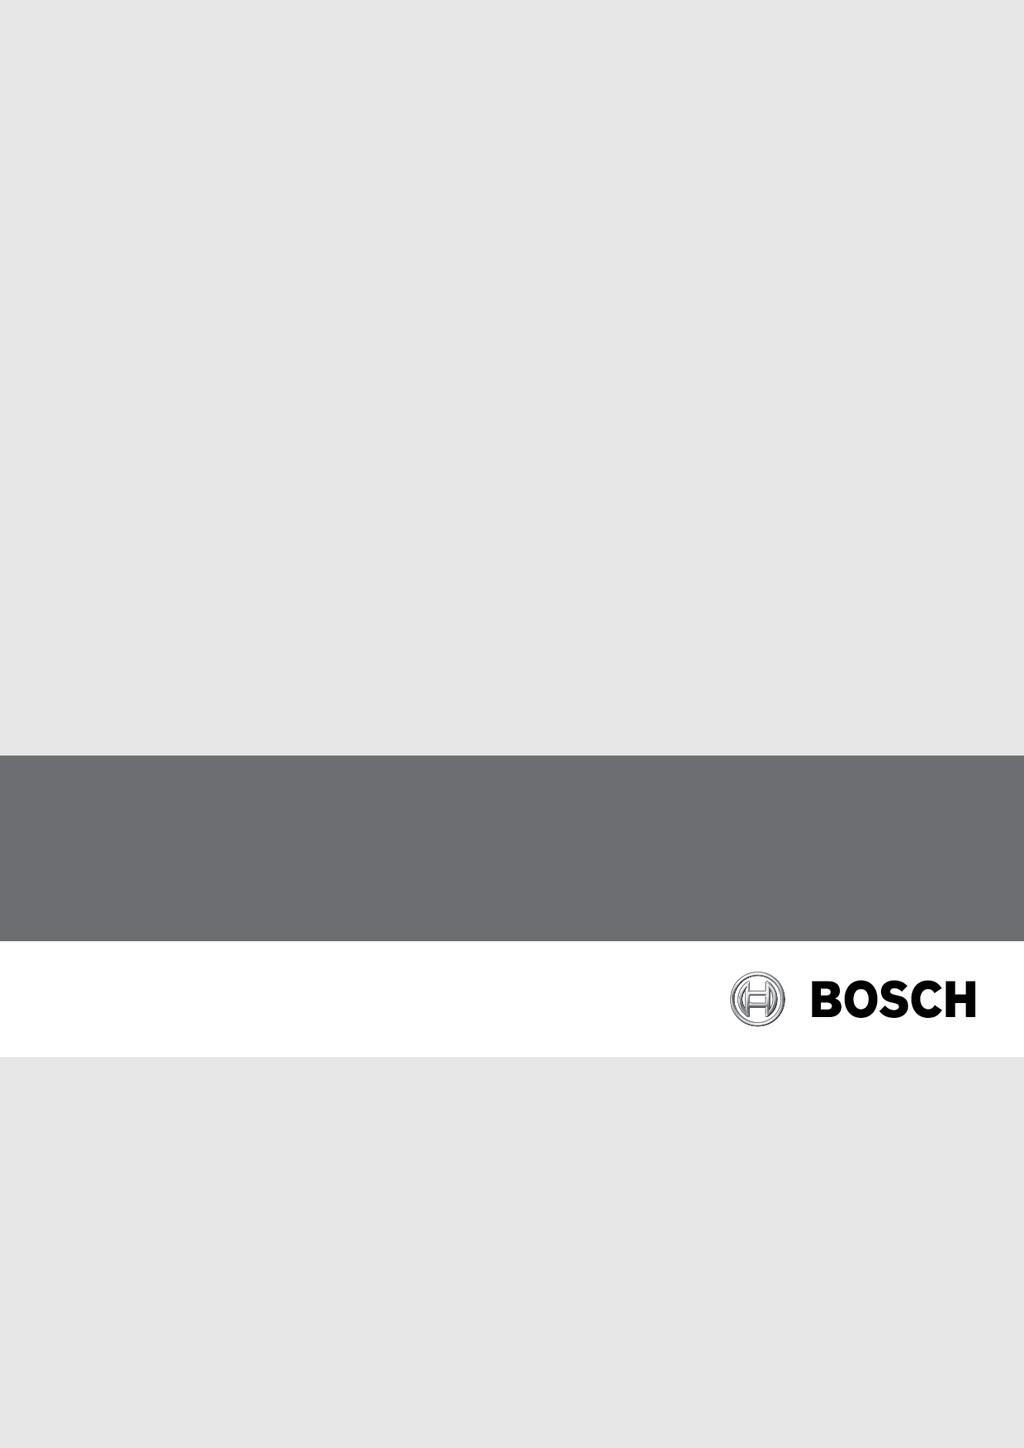 Bosch Climate 5000 RAC Sterownik bezprzewodowy Model RG57 B/BGE Instrukcja obsługi sterownika bezprzewodowego klimatyzatora ściennego Kompatybilny z modelami serii Climate 5000: RAC 2,6-2 IBW RAC